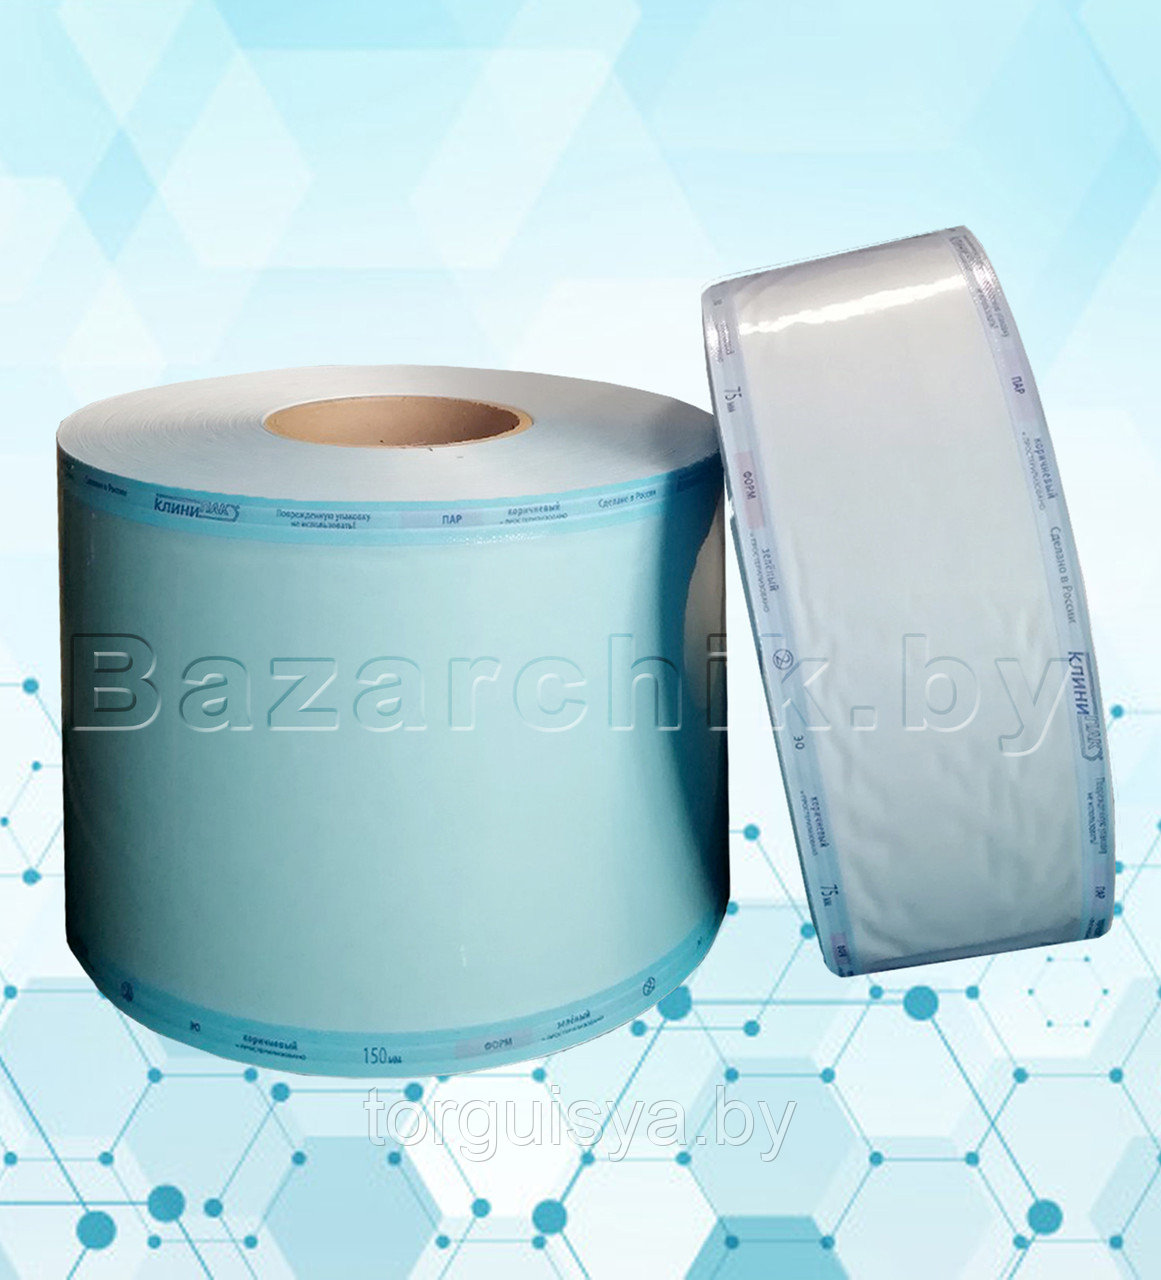 Рулоны упаковочные для стерилизации и хранения изделий 150 мм х 200 м (1 шт.)